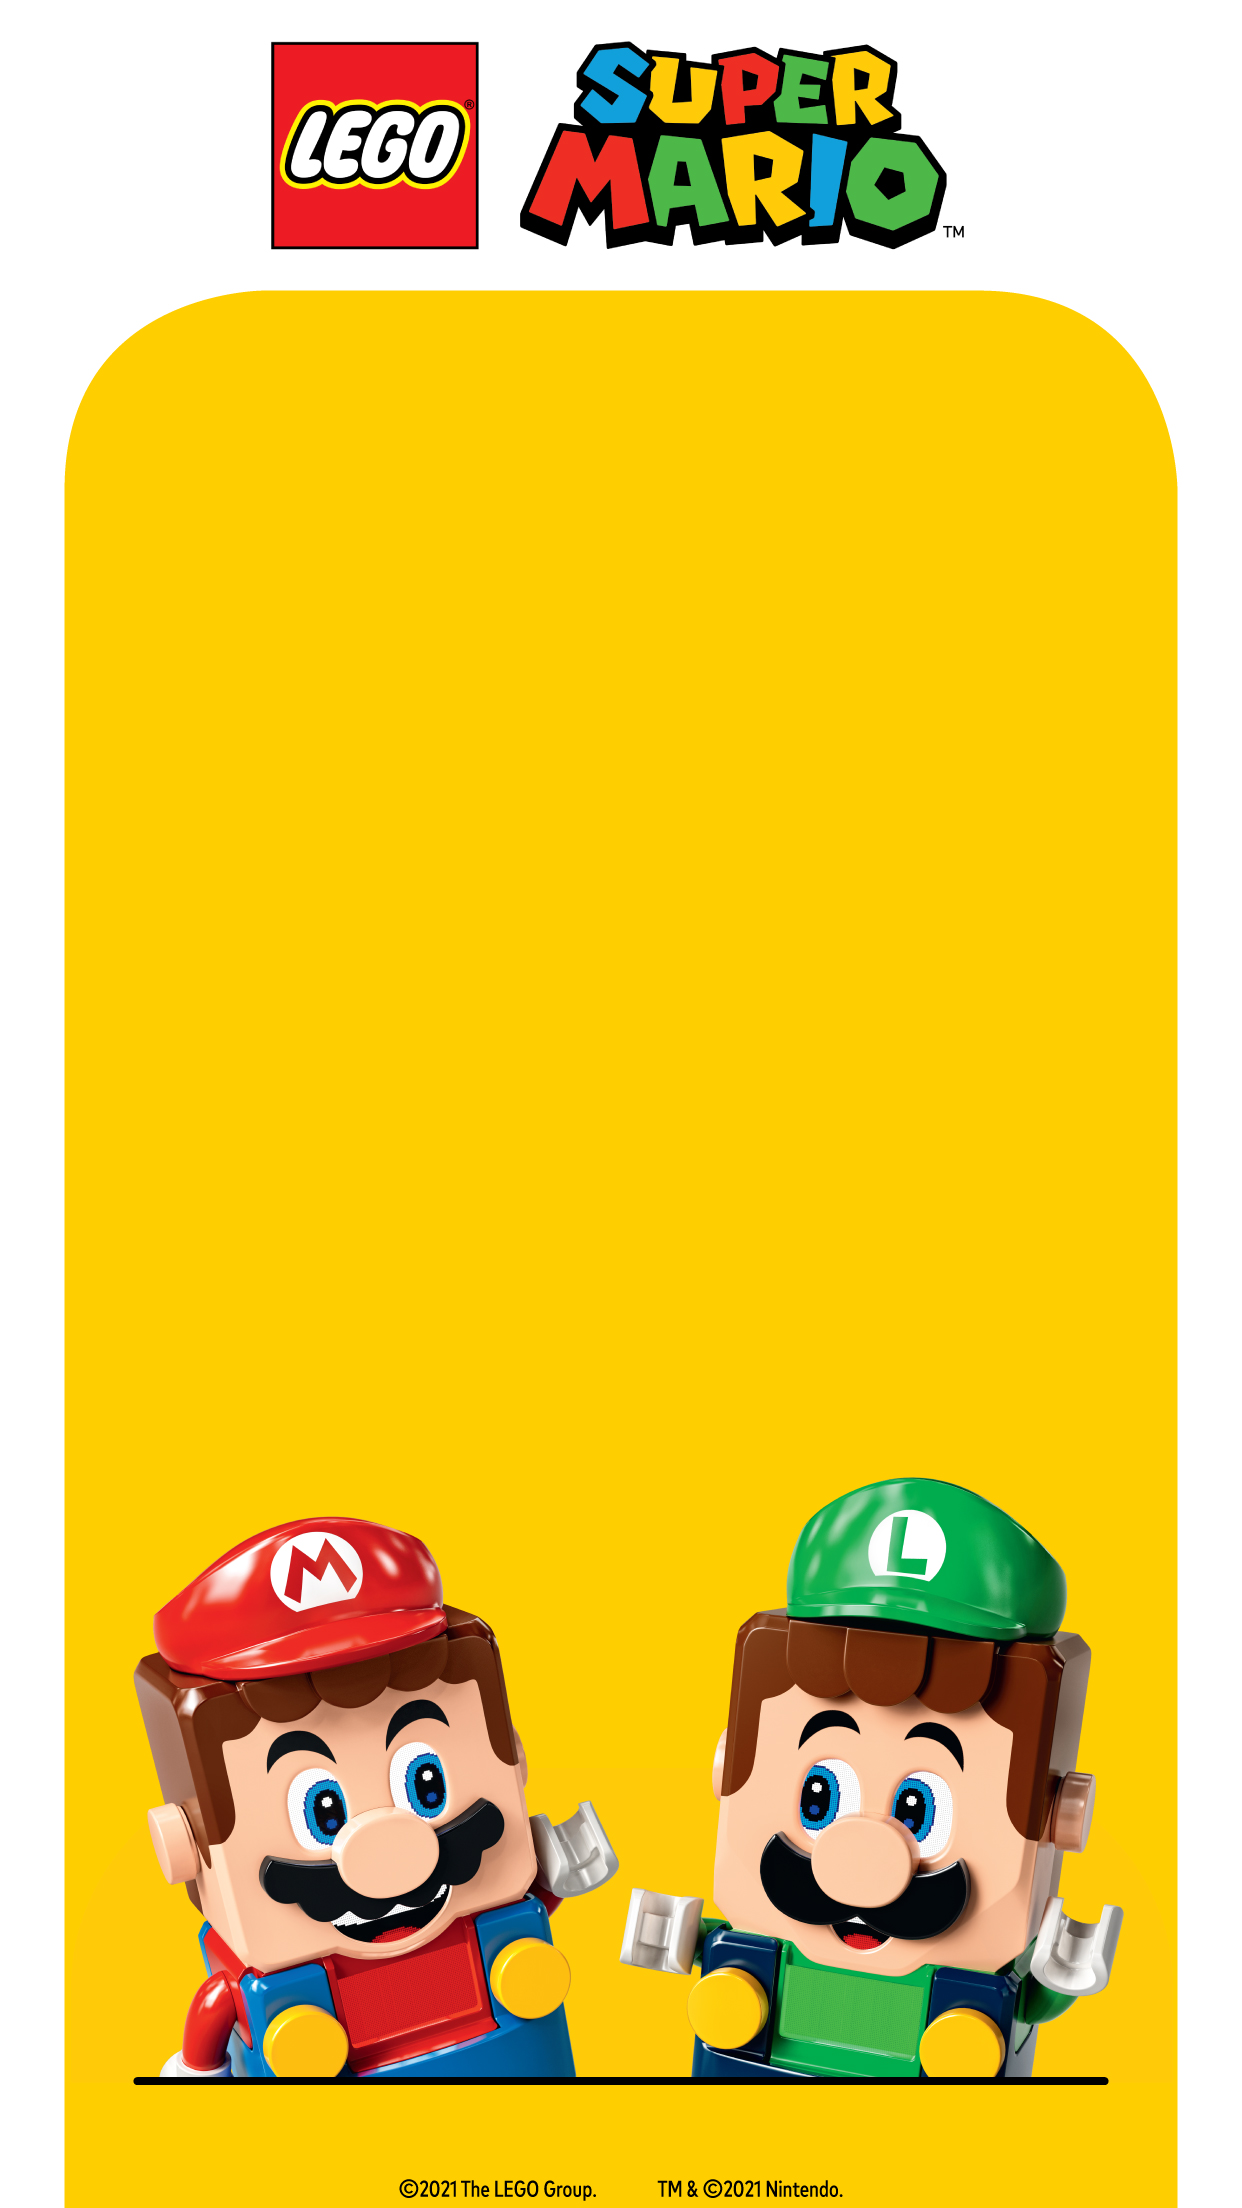 Mario and Luigi in Lego Super Mario